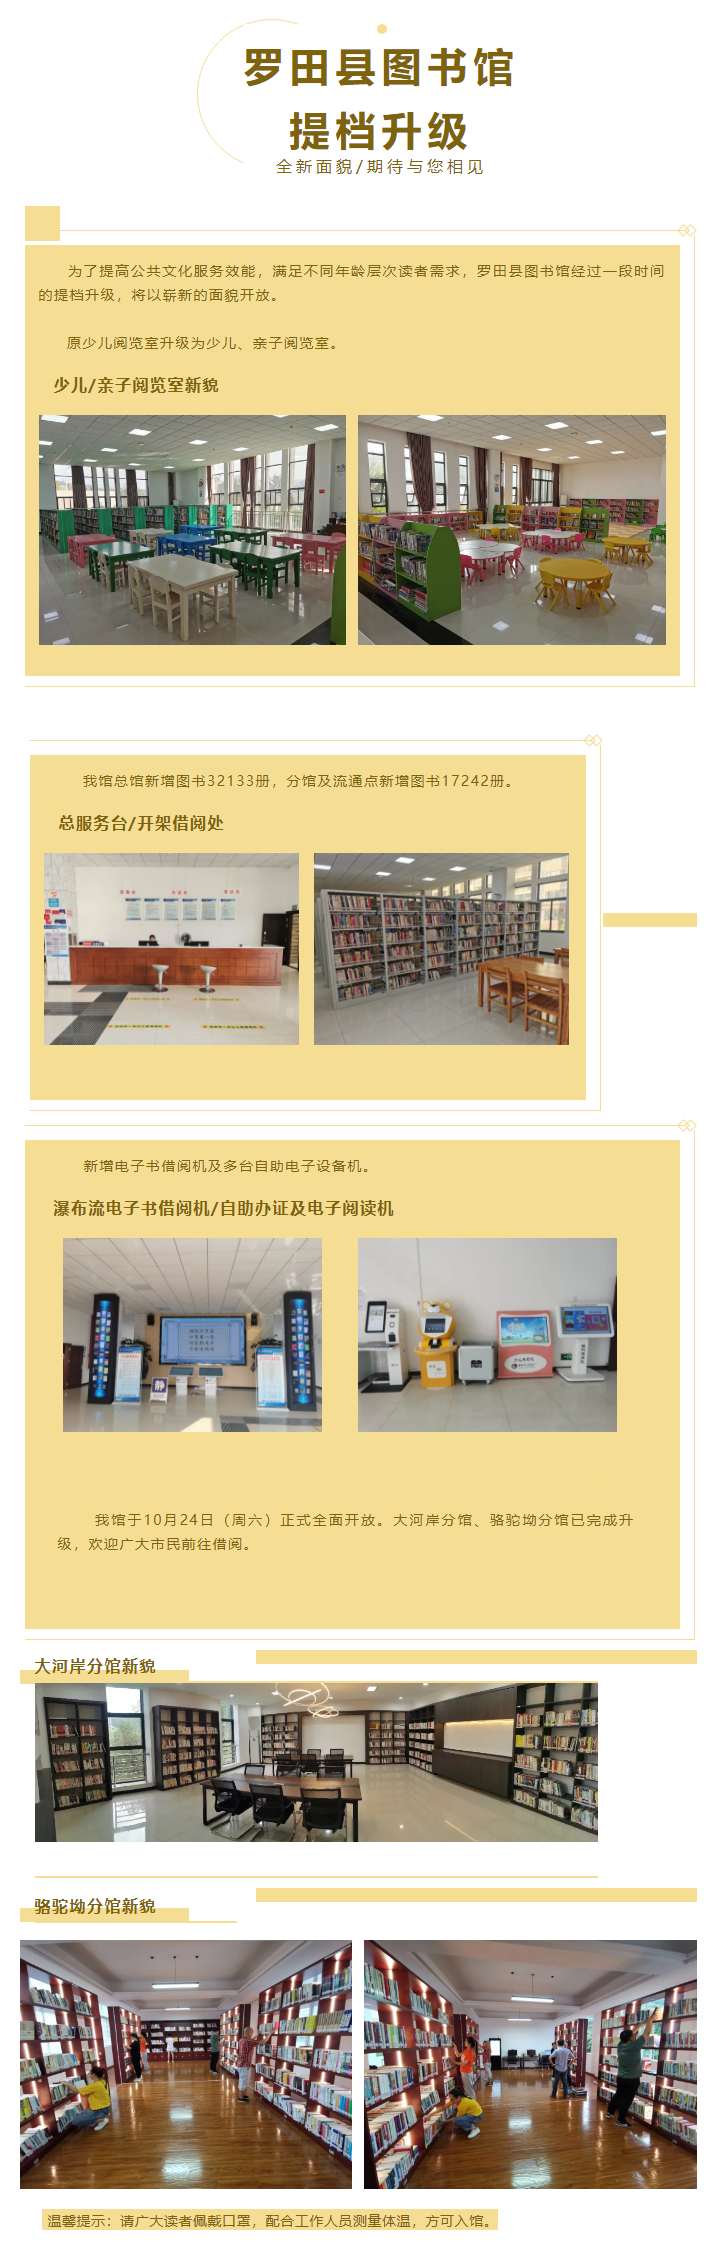 罗田县图书馆提档升级全新面貌，期待与您相见.png?v=1720359880624